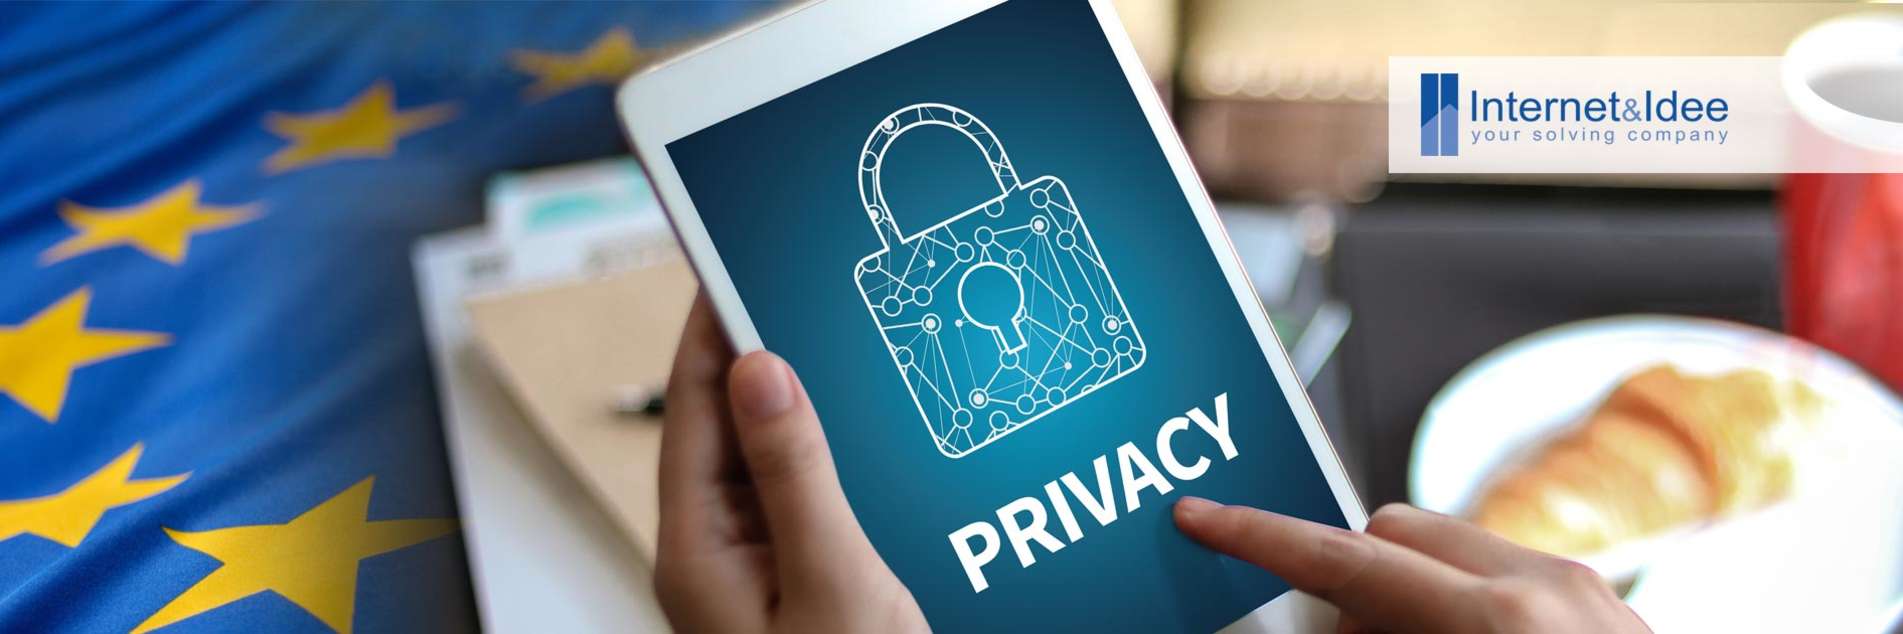 Normativa GDPR: come cambia la tutela della privacy e la protezione dei dati personali